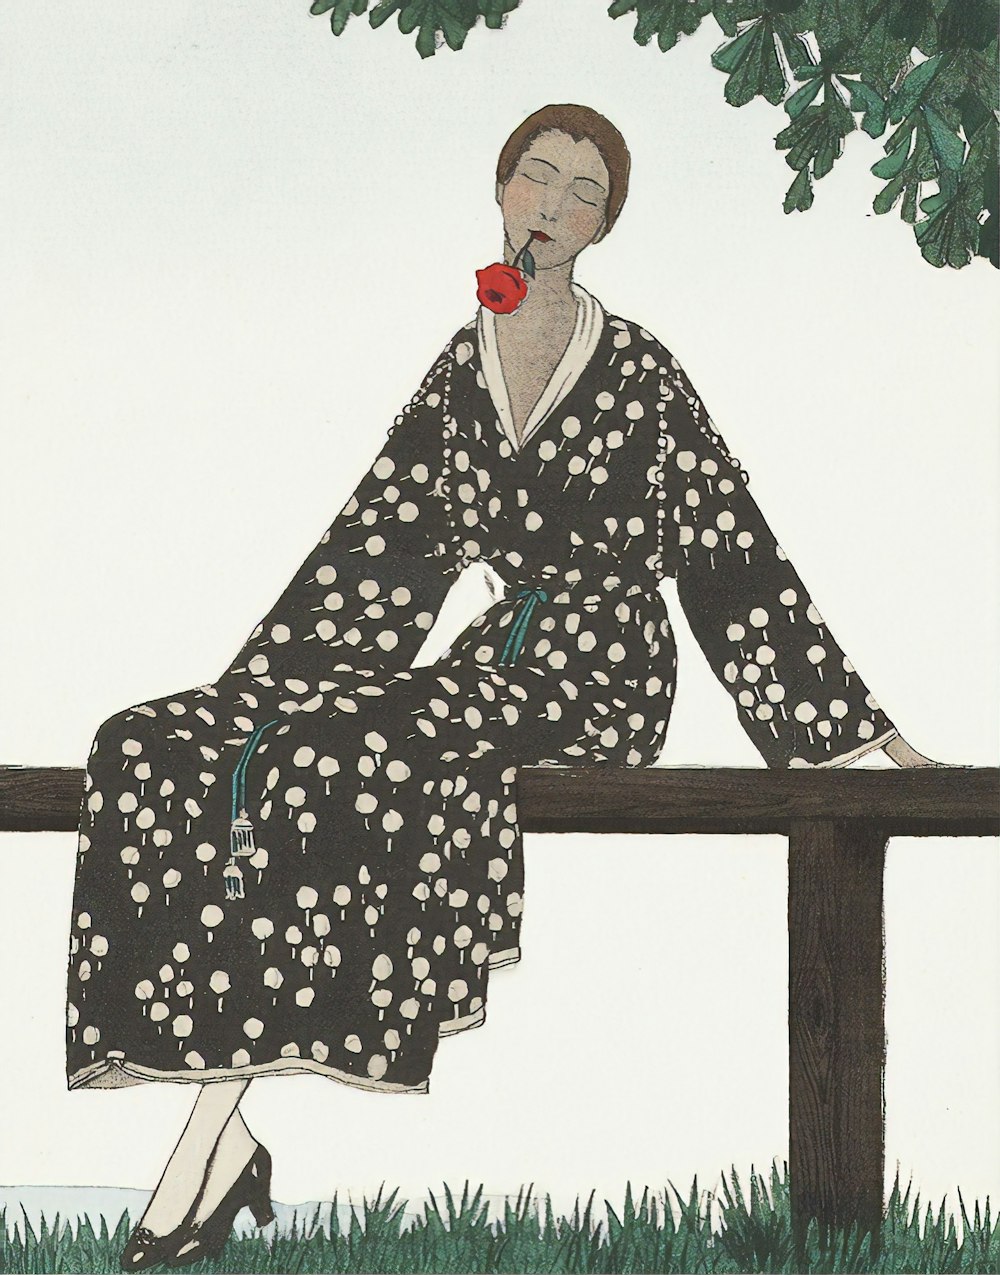 Femme en robe florale noire et blanche assise sur un banc en bois brun